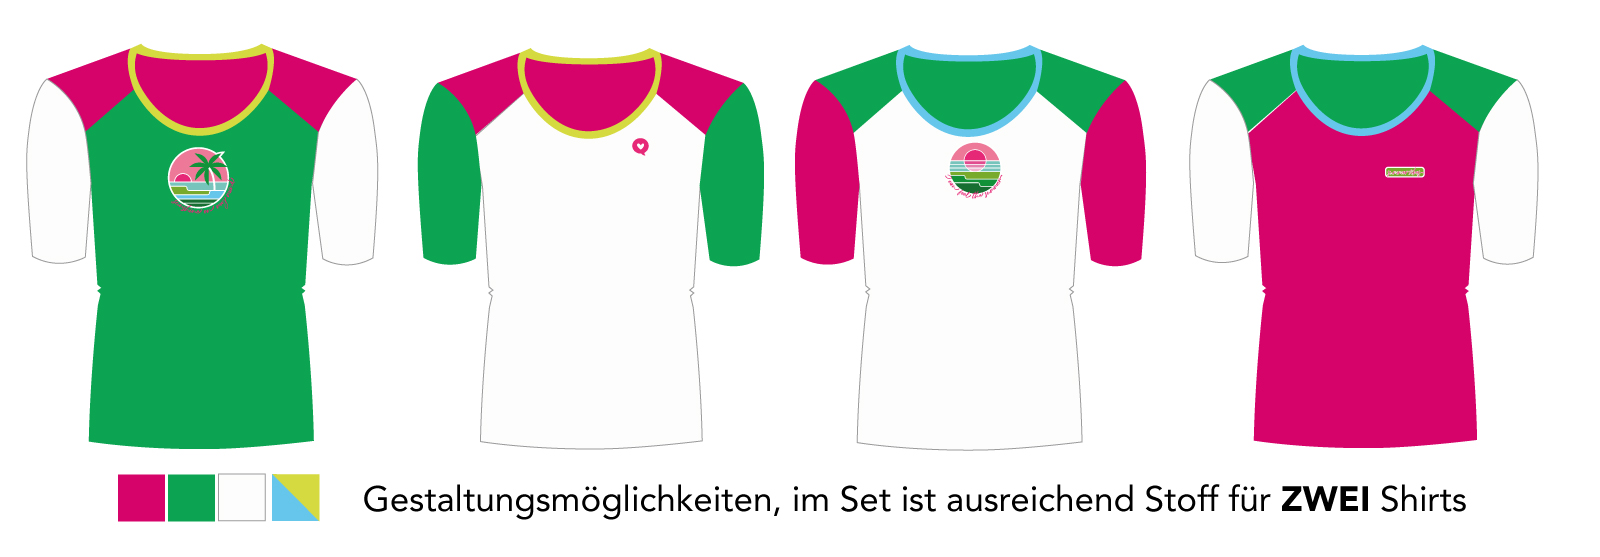 Nähset Basic Shirt2 -pink/grün- 